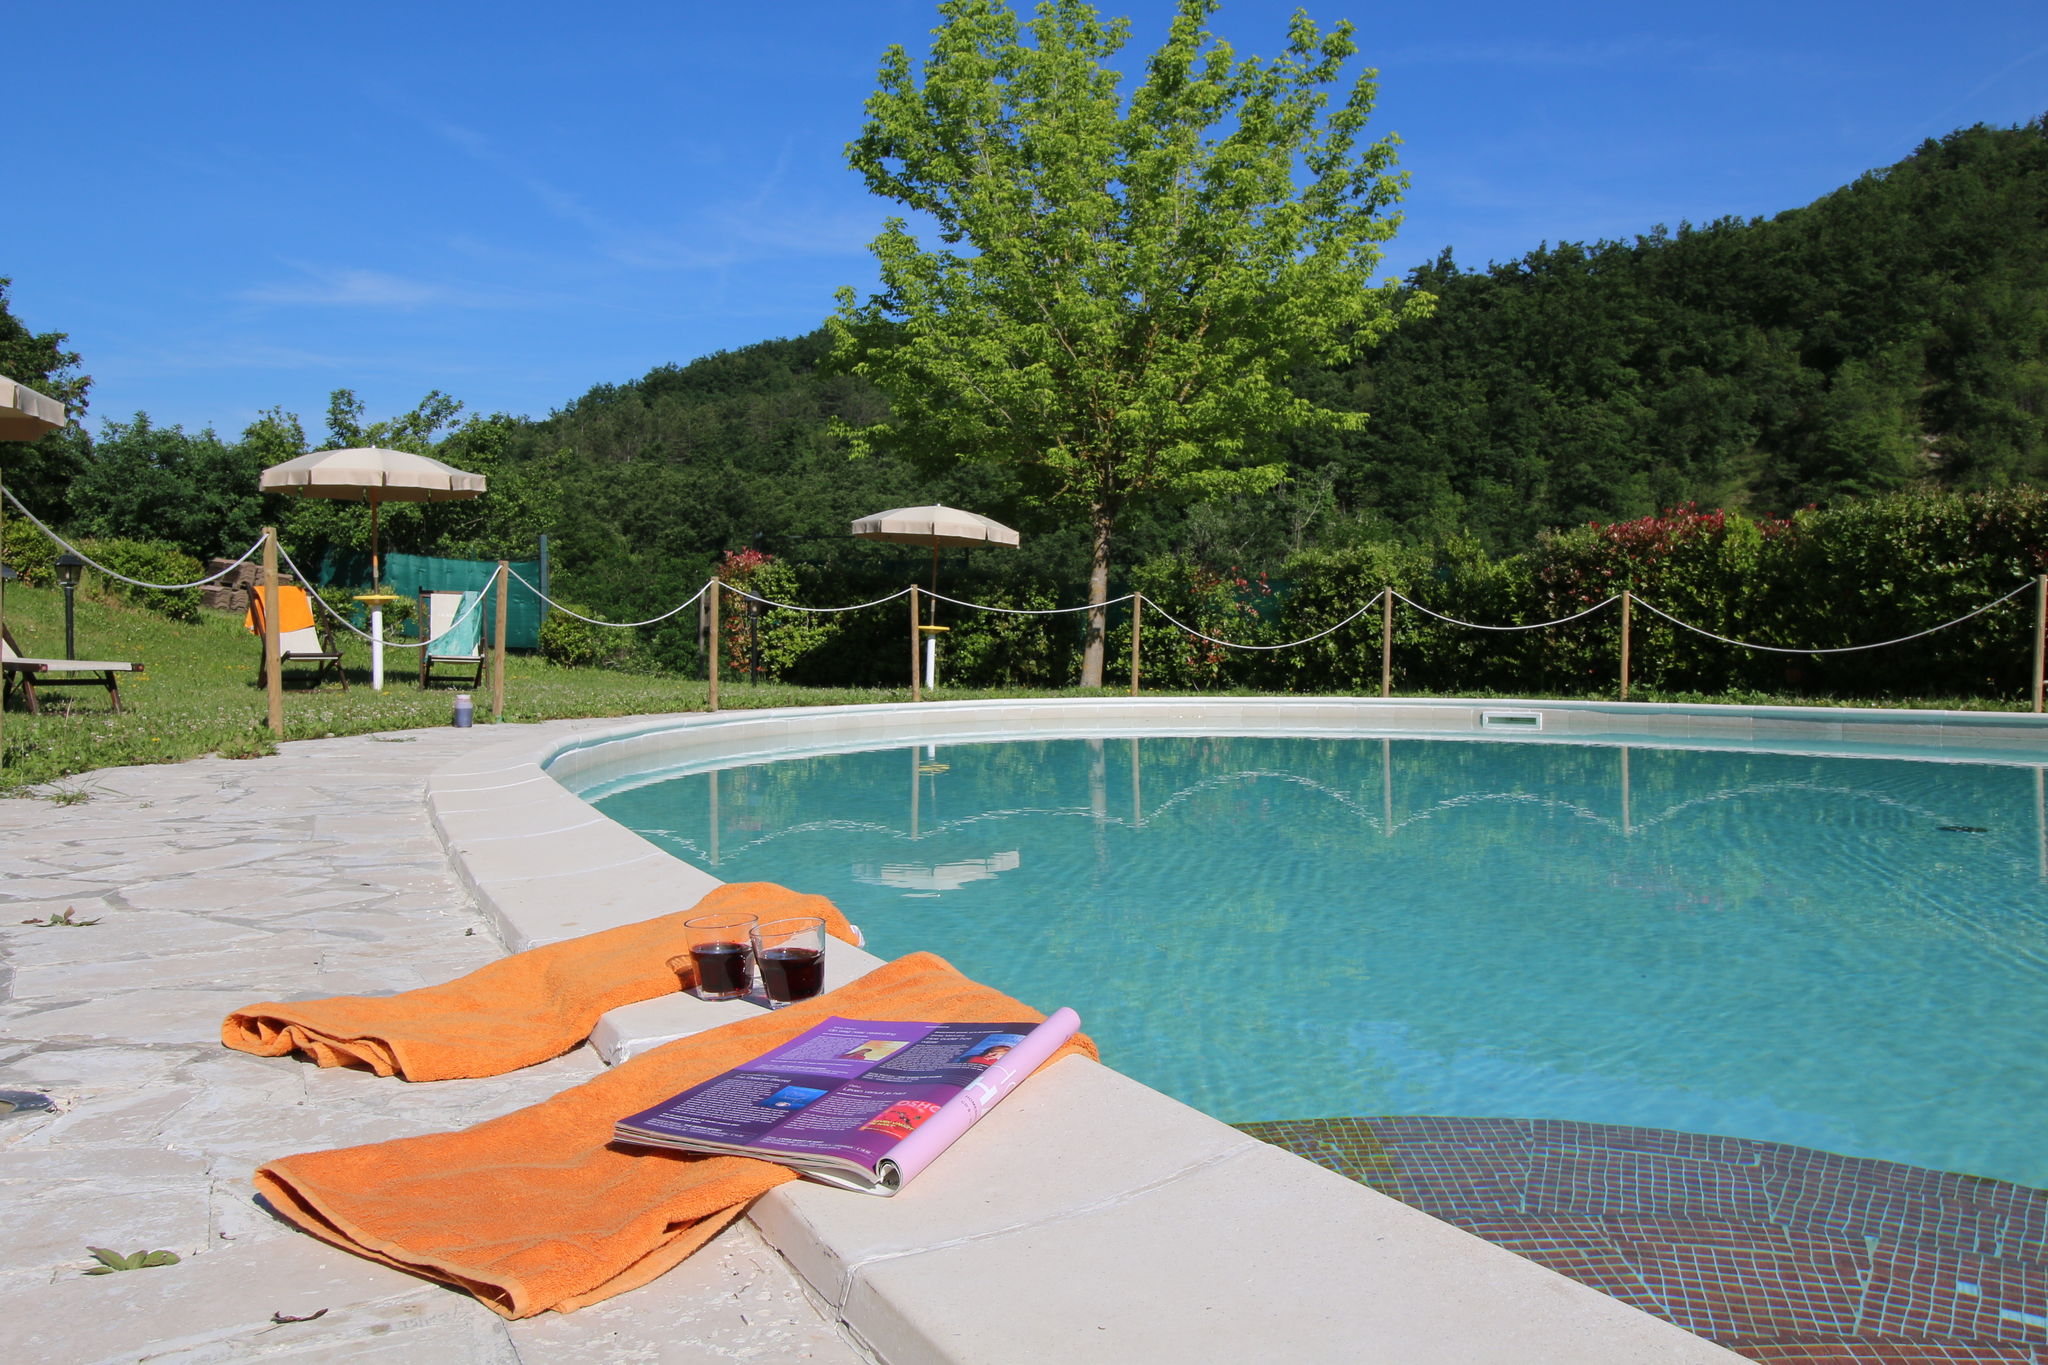 Ferienhaus in Apecchio mit Swimmingpool